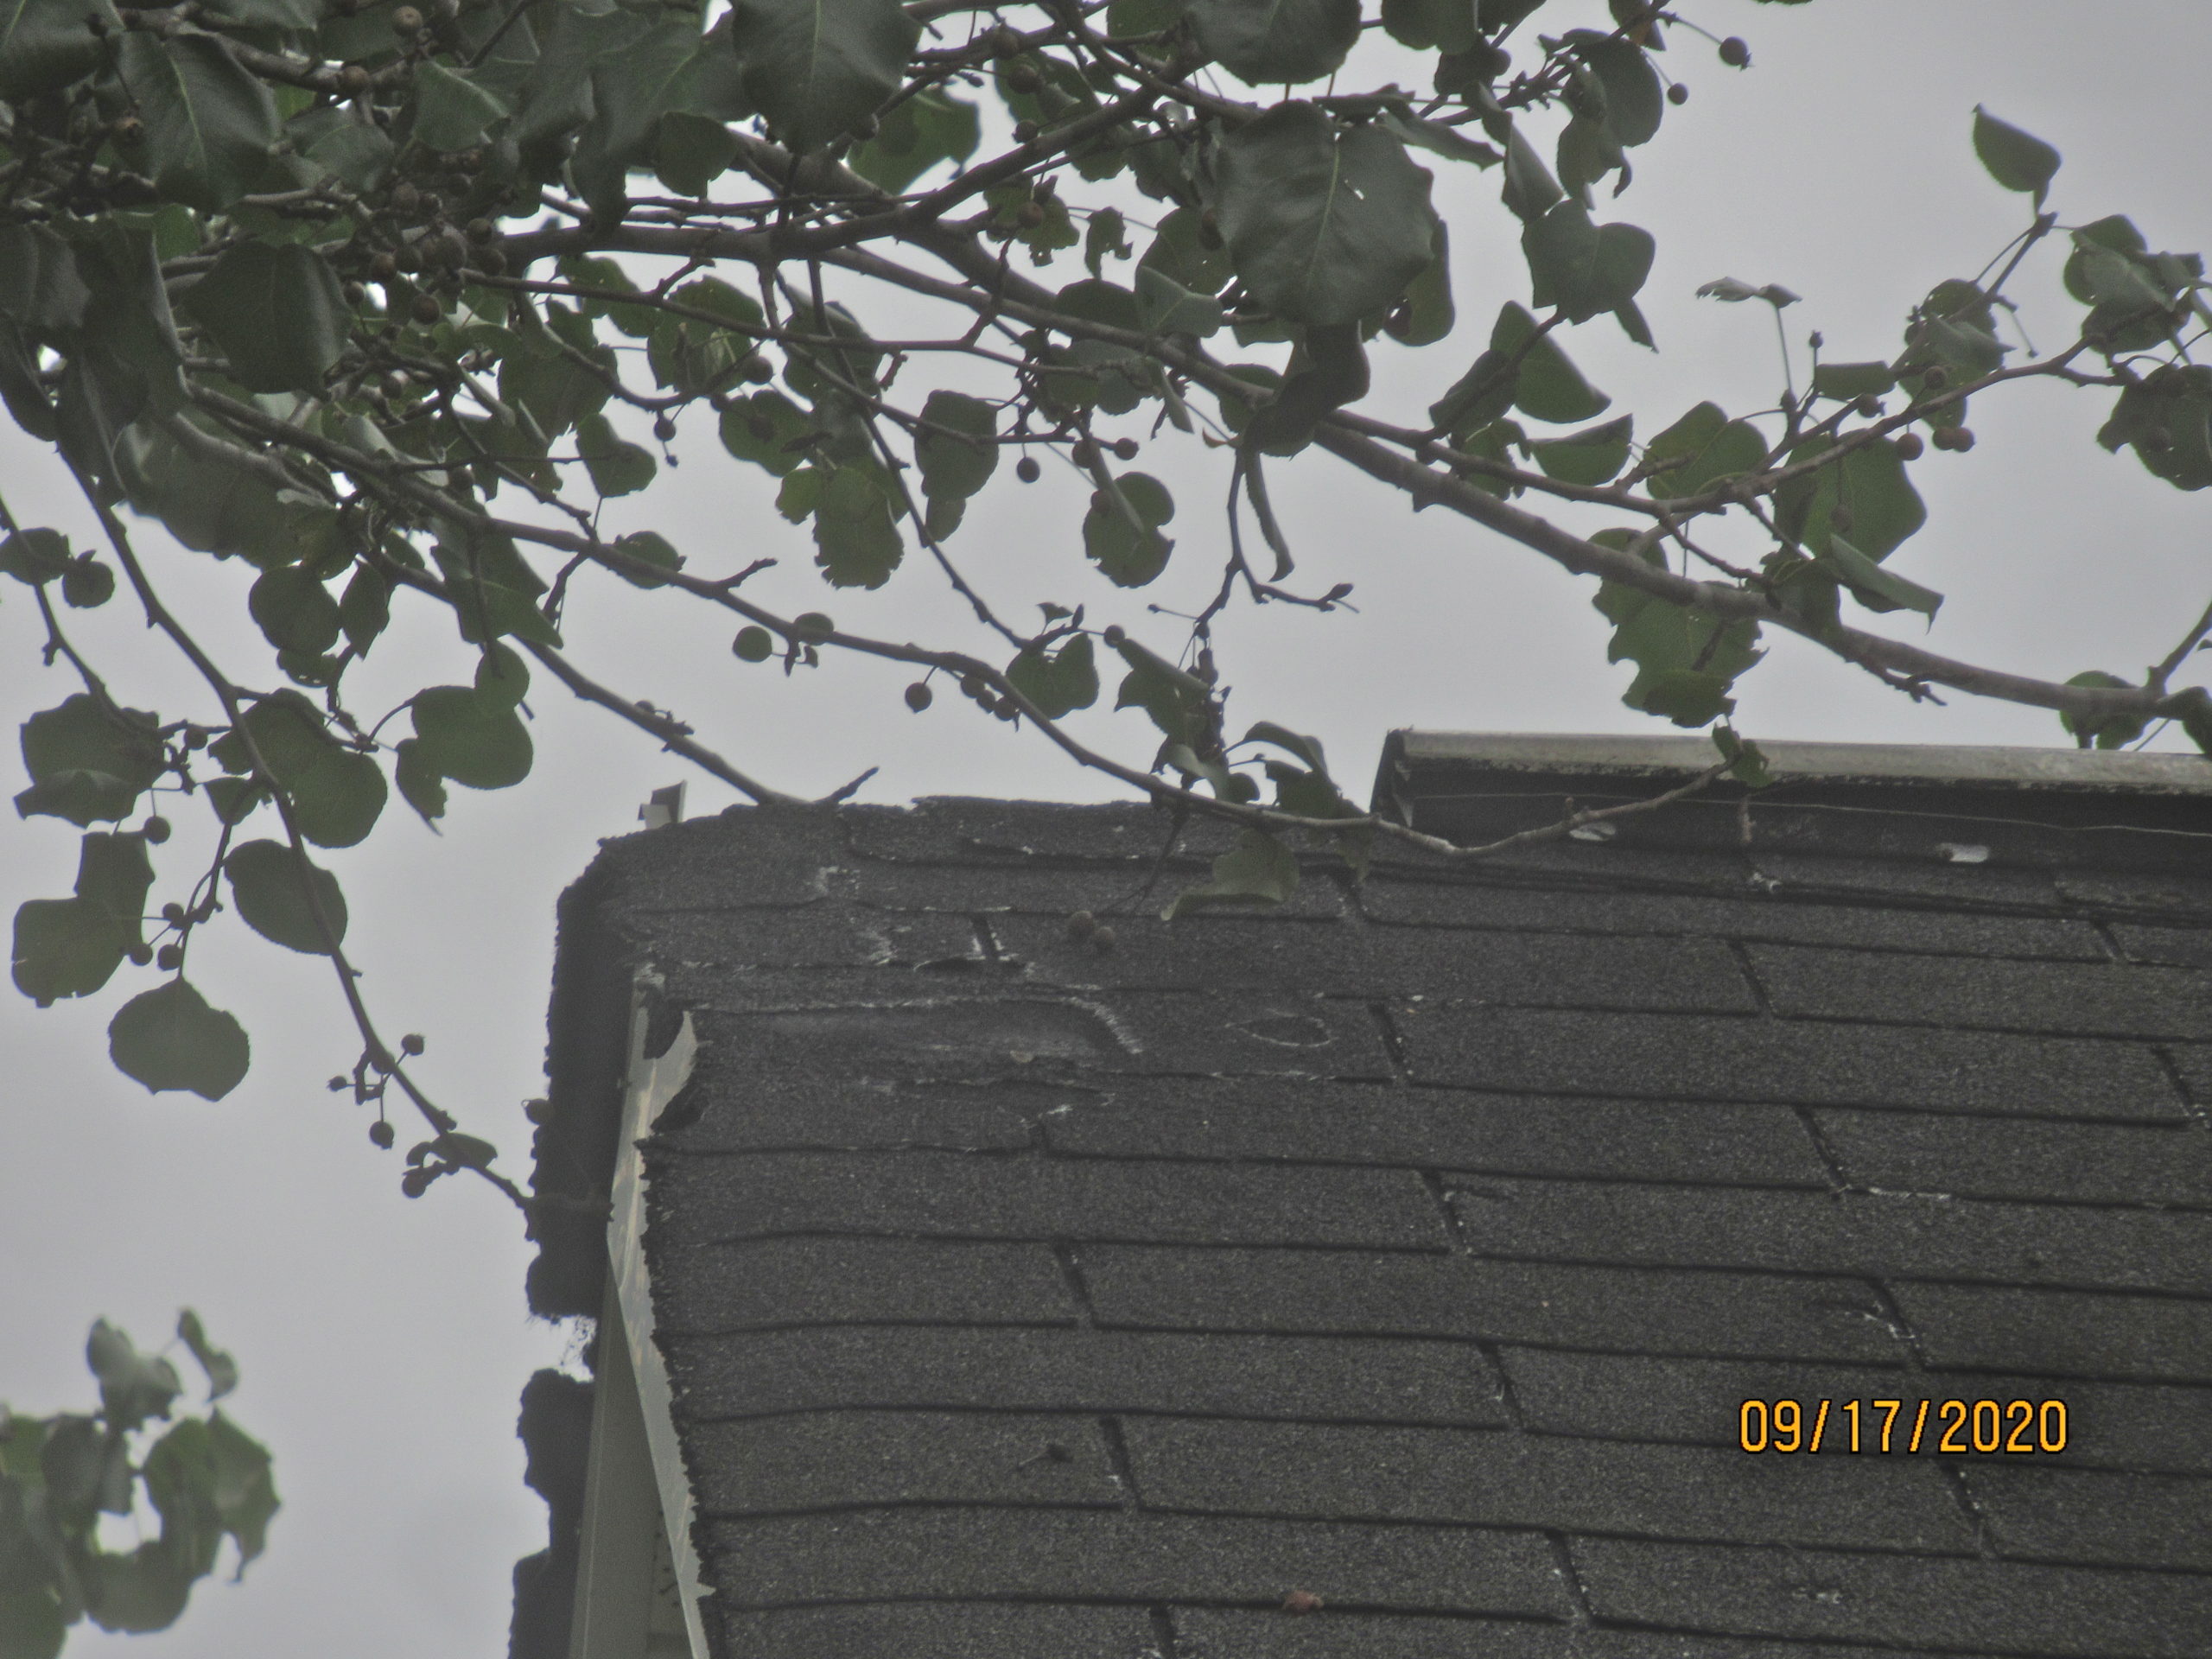 Damaged roof shingles